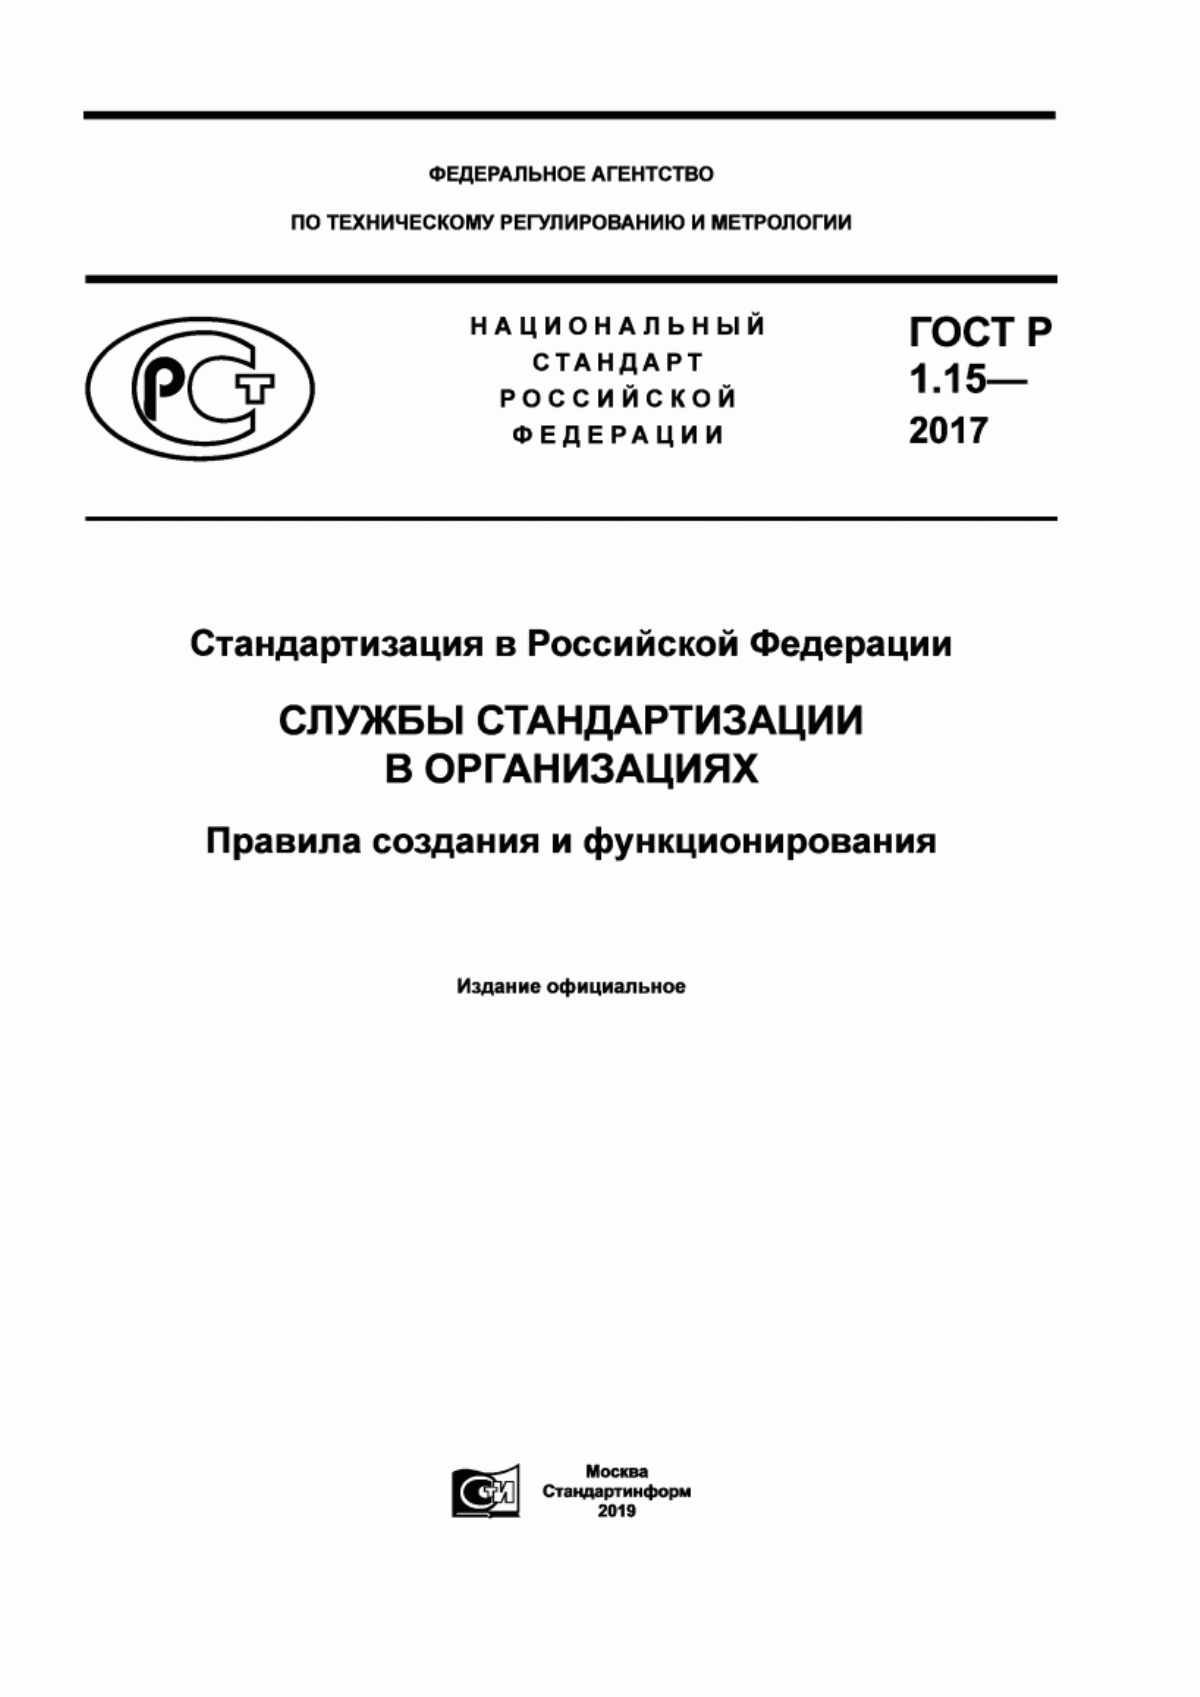 ГОСТ Р 1.15-2017 Стандартизация в Российской Федерации. Службы стандартизации в организациях. Правила создания и функционирования